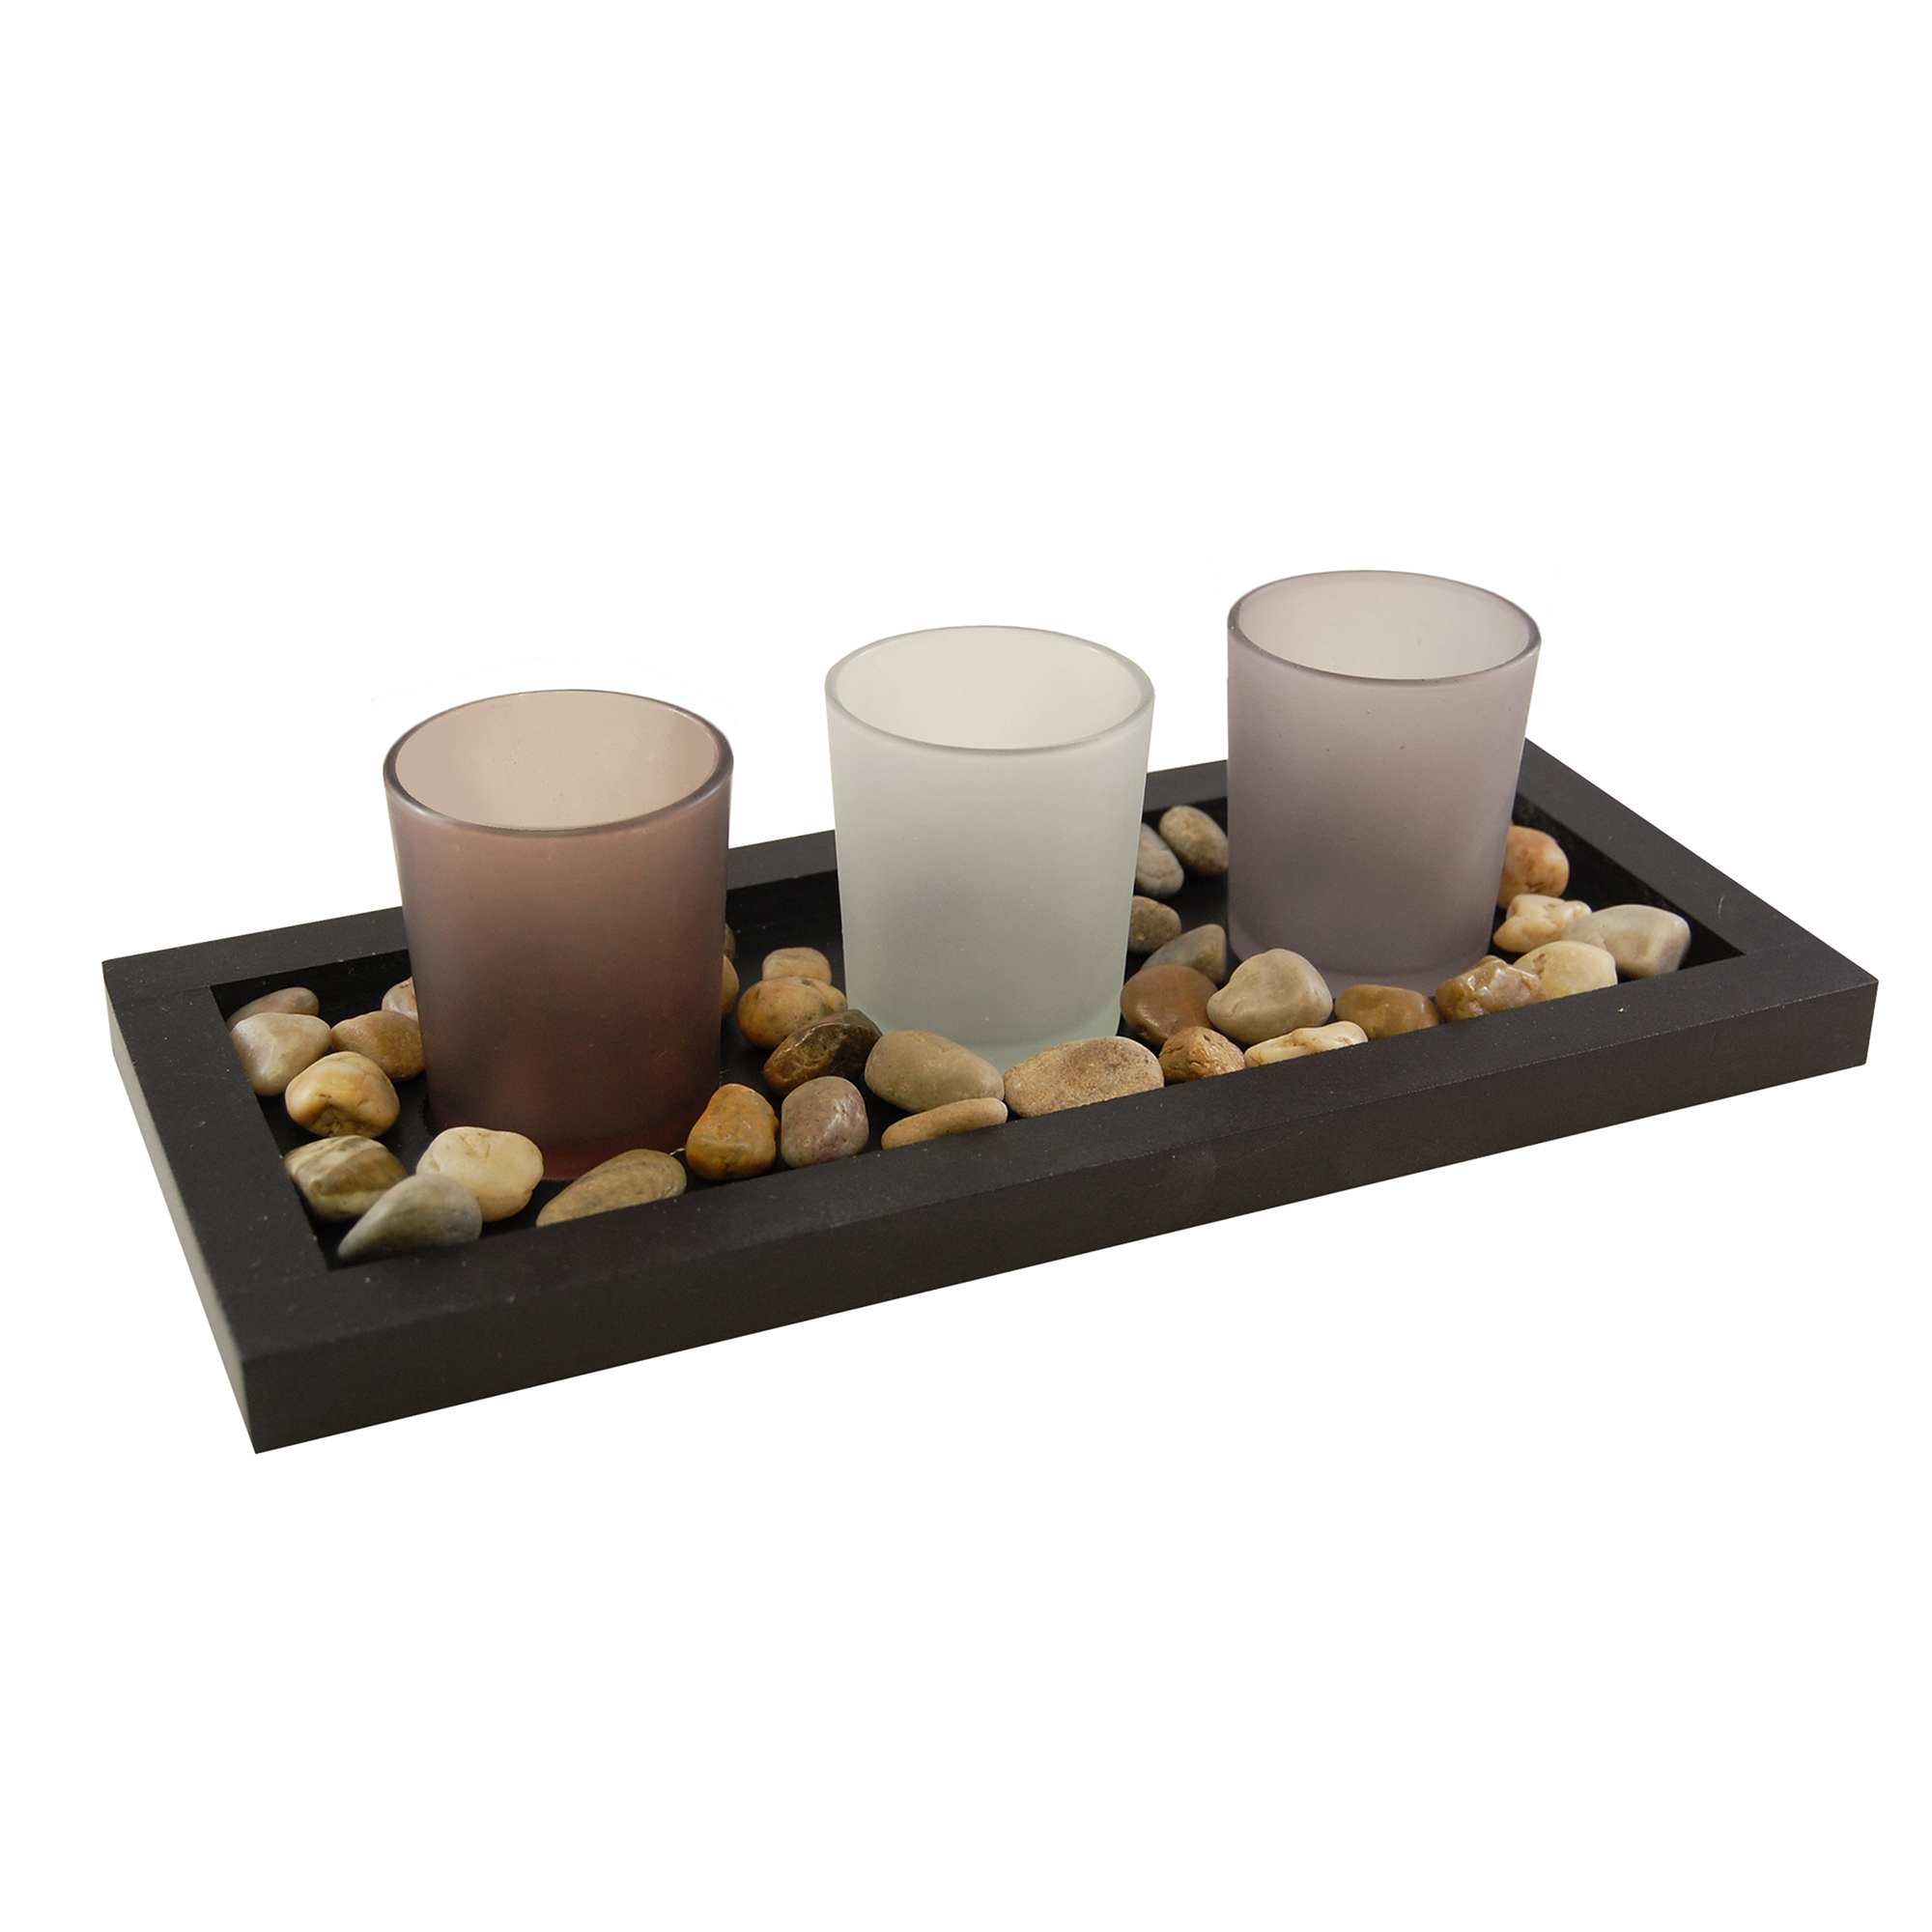 3 Candle Wooden Votive Tray w/Ceramic Bowls & Decorative Gravel Florettes 